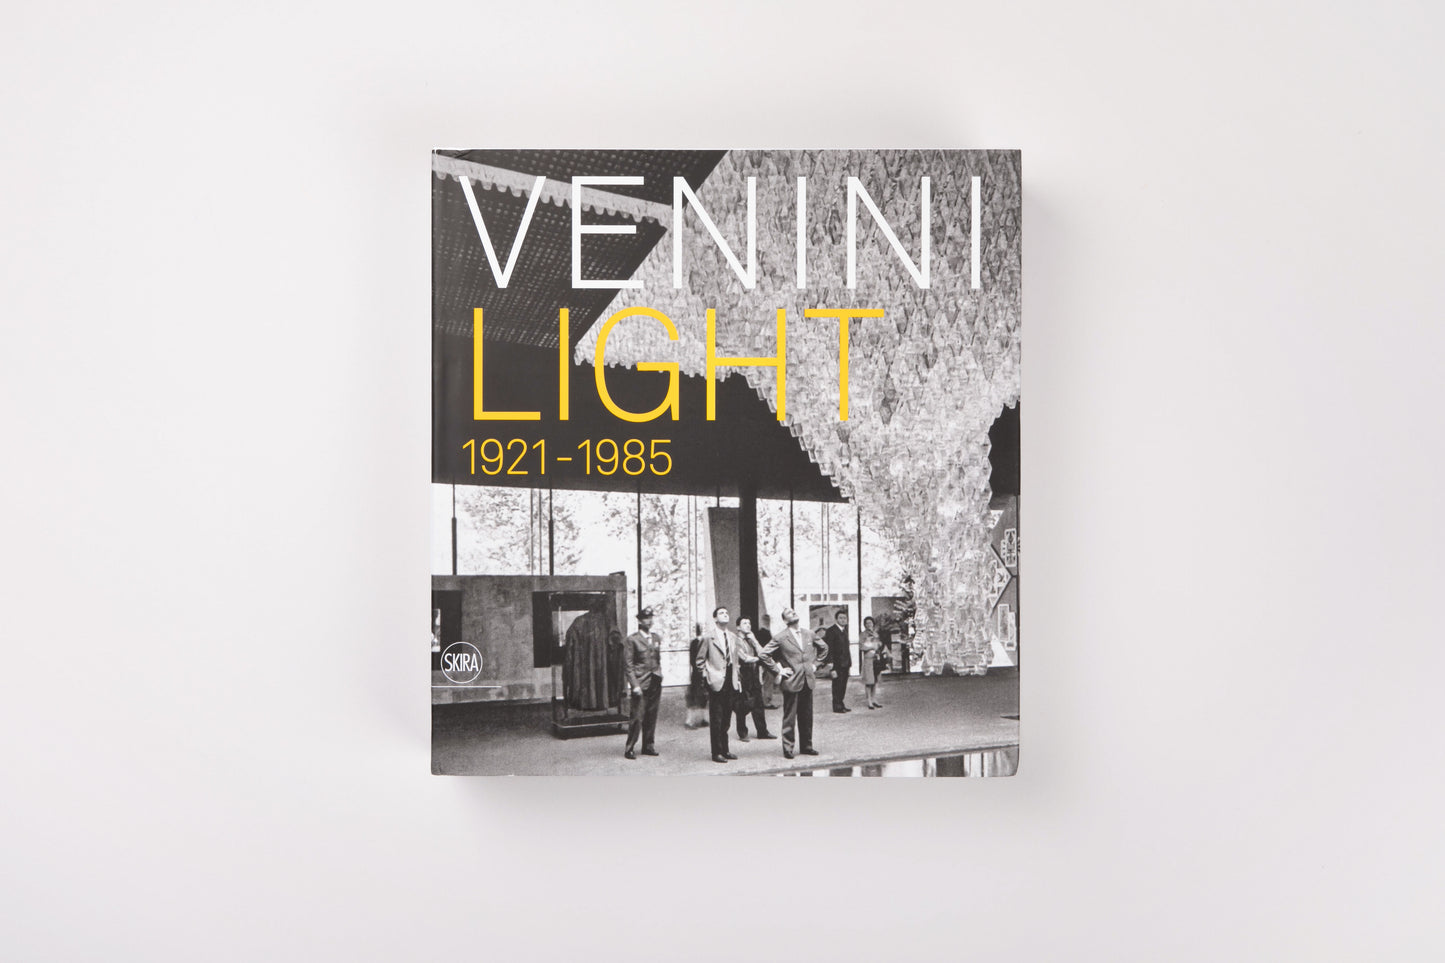 Venini: Light 1921-1985